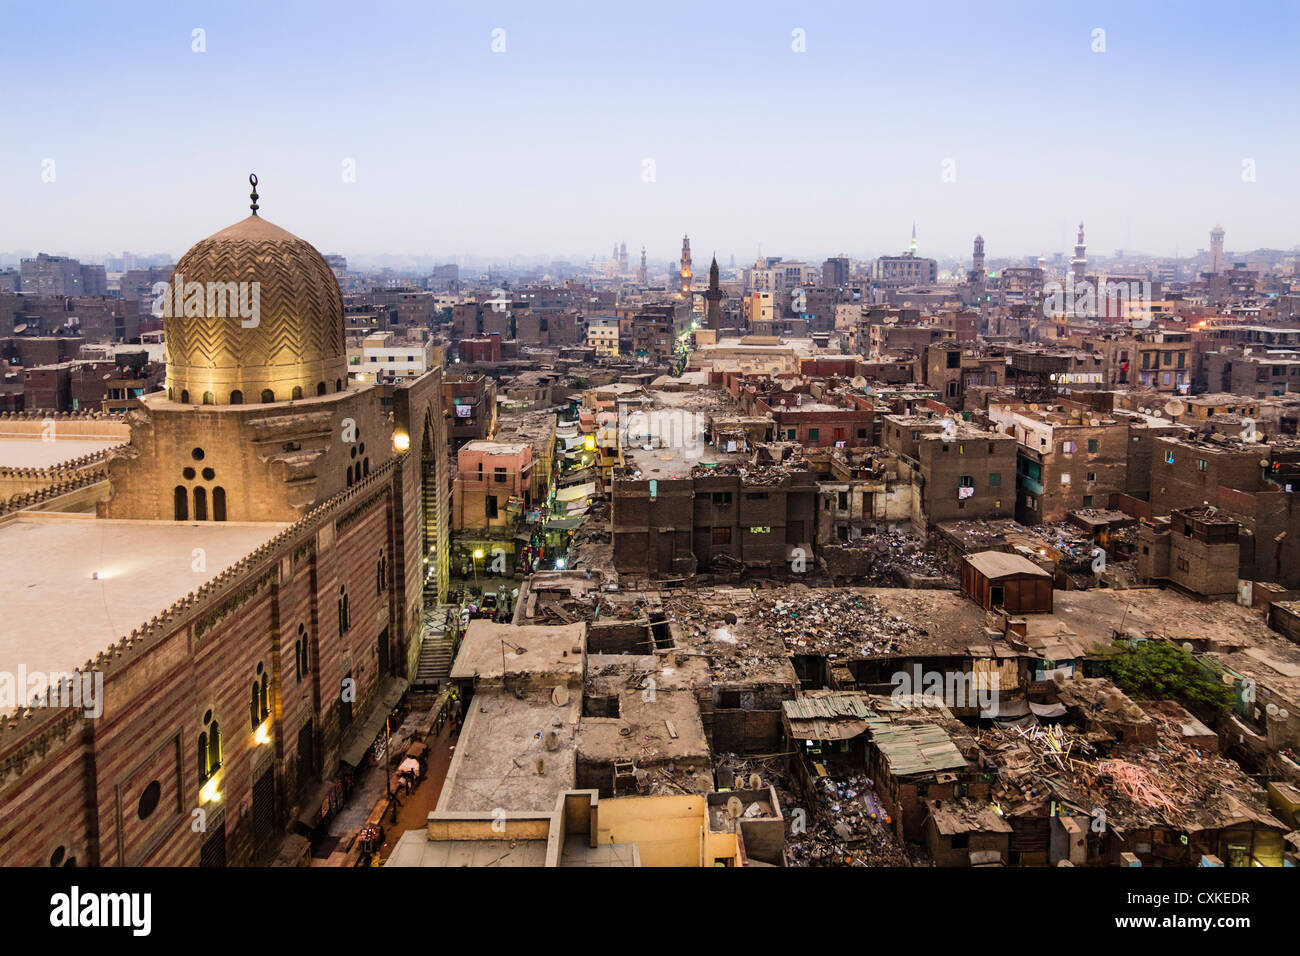 Überblick über das islamische Kairo mit Moschee von Sultan al-Muayyad und baufälligen Dach Gebäude. Kairo, Ägypten Stockfoto